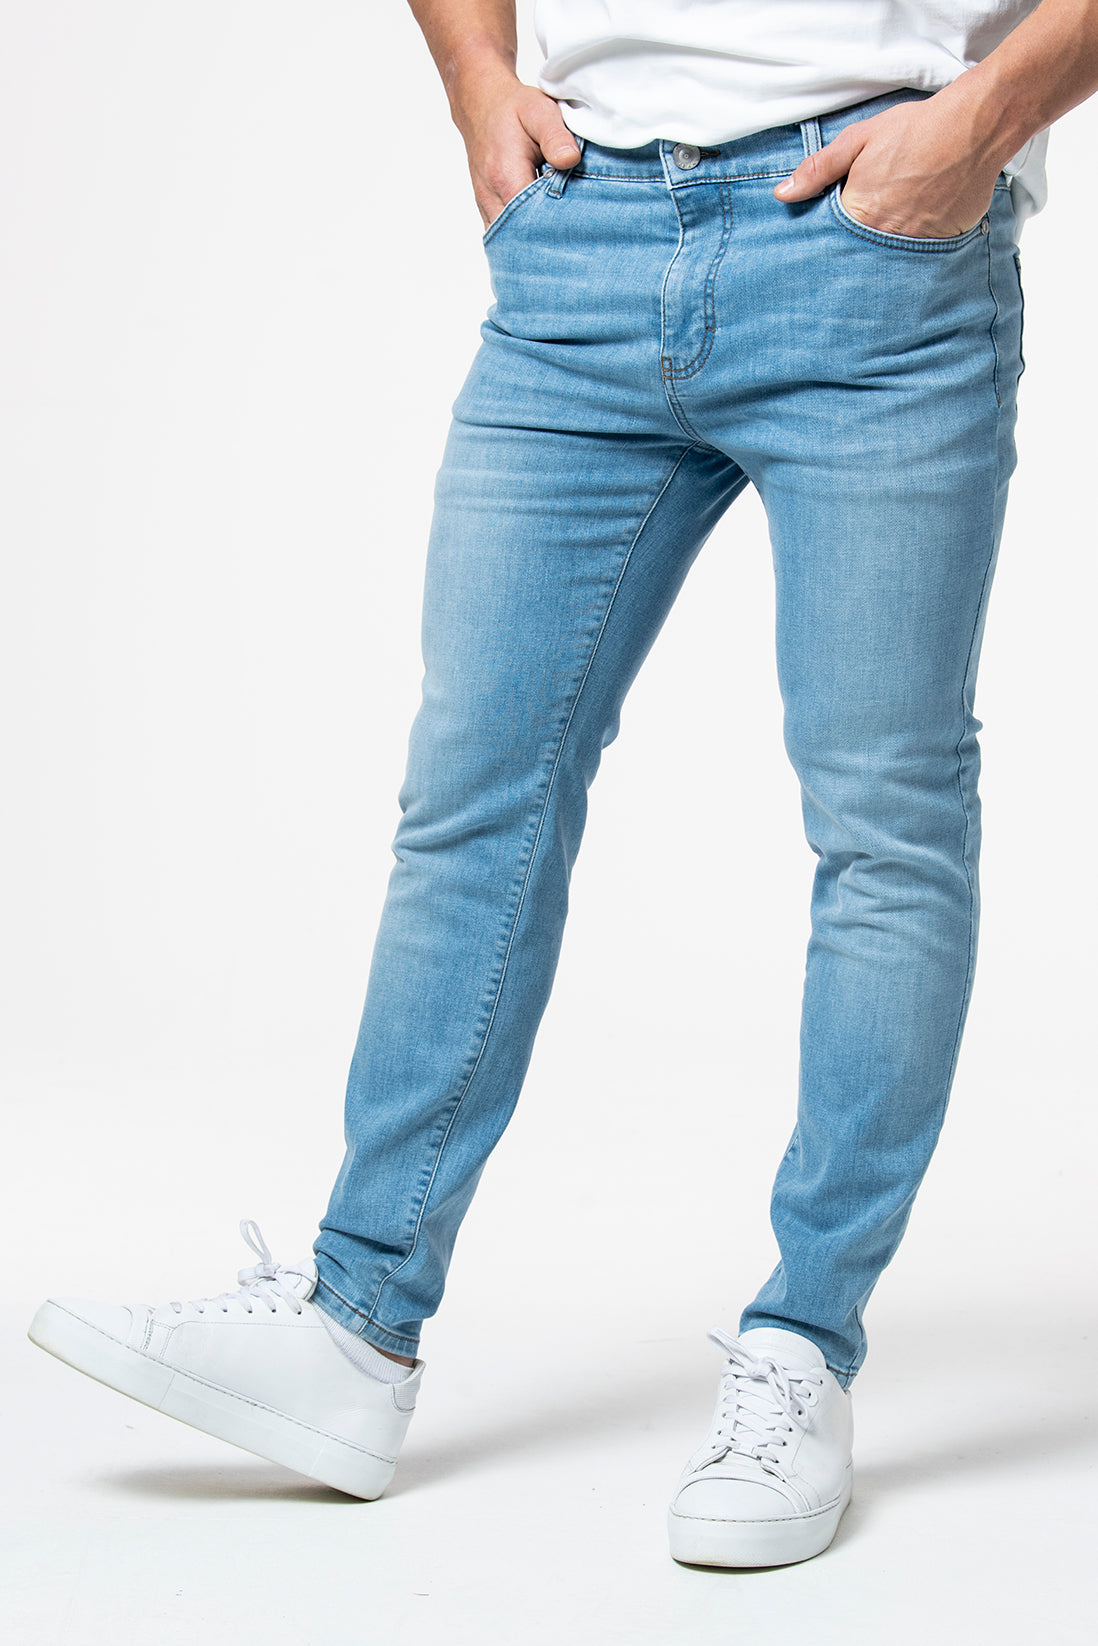 IOS - Jeans